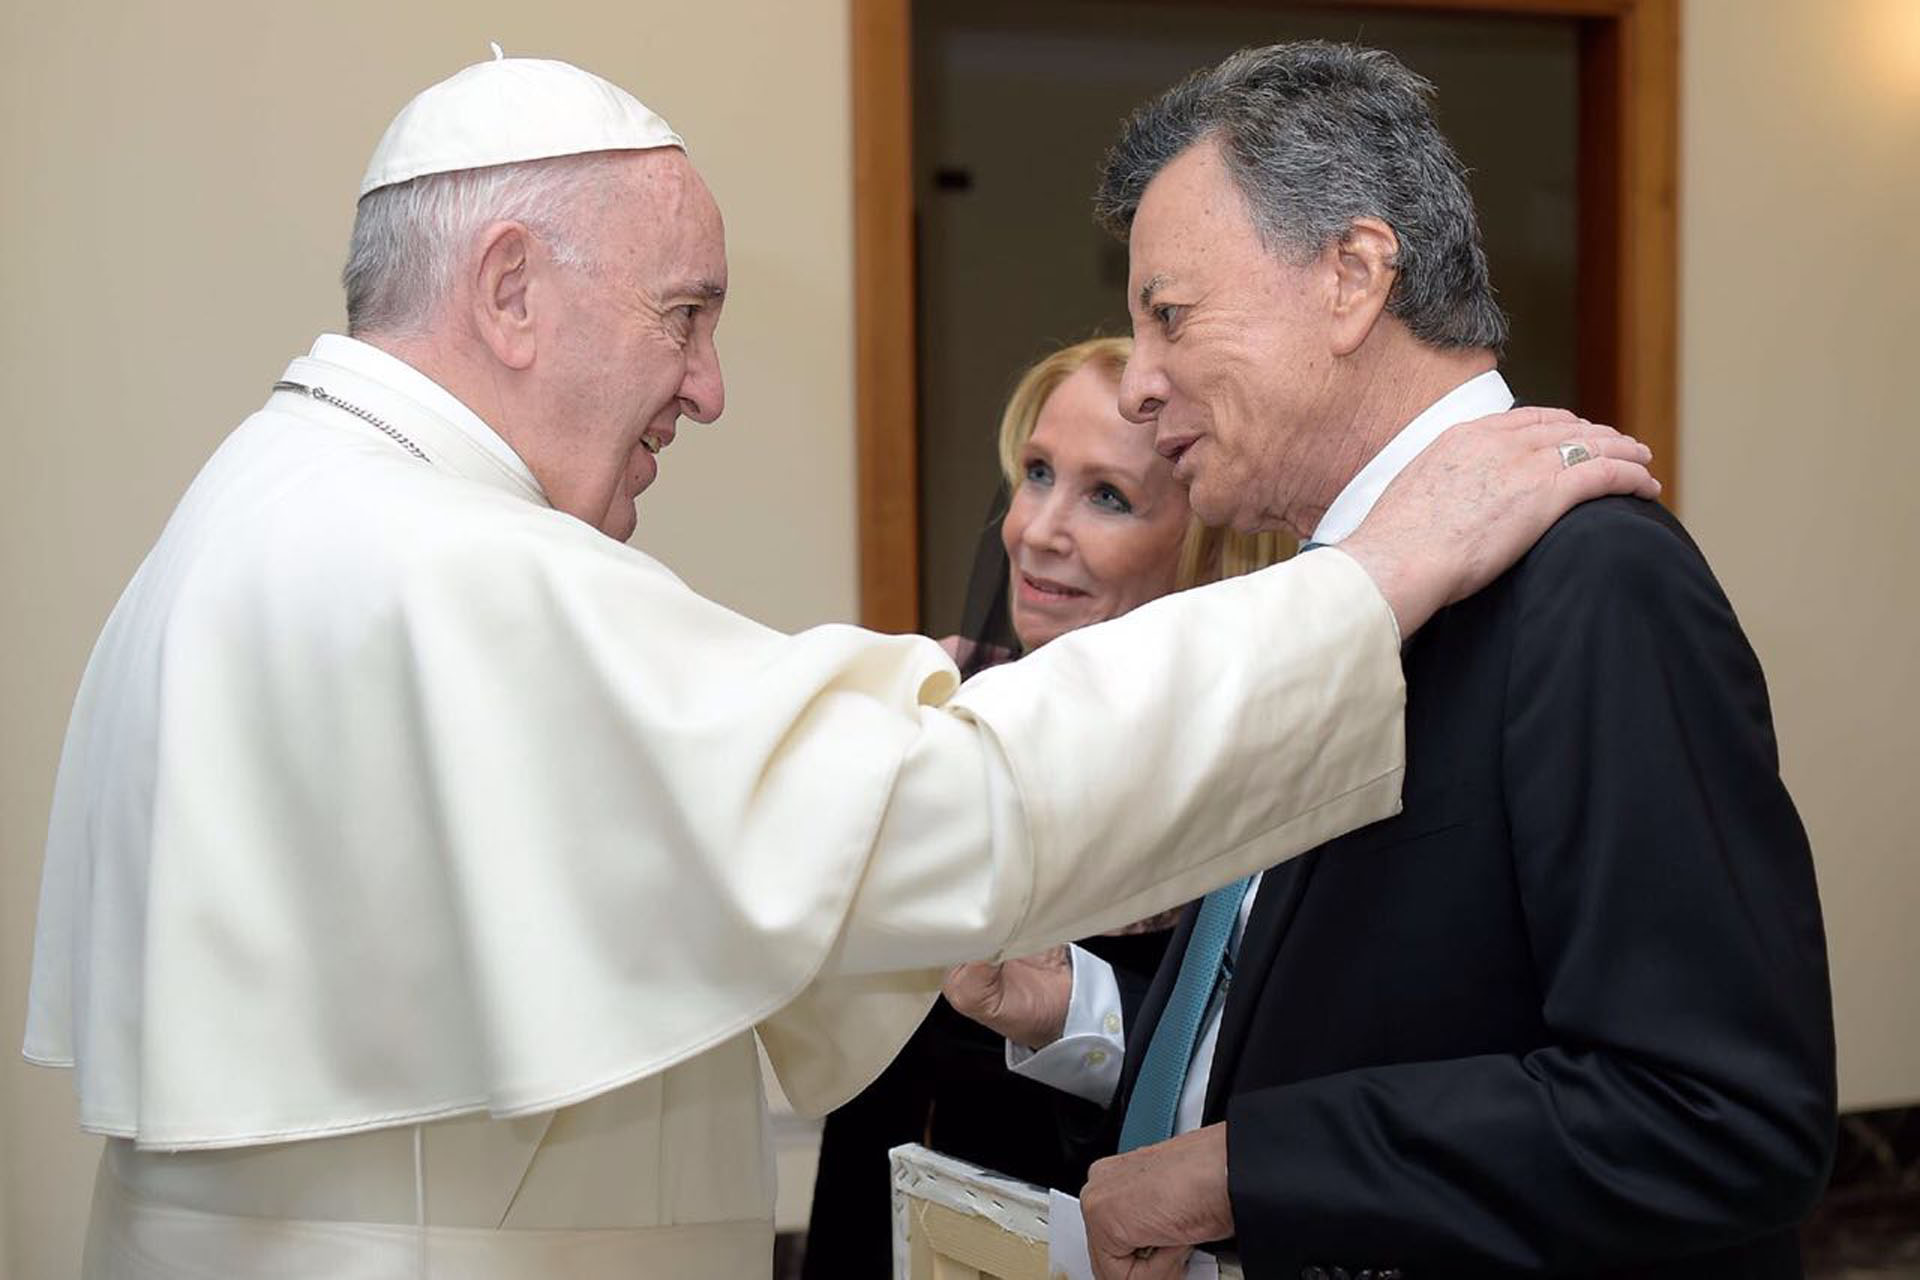 El papa Francisco recibió a "Palito" Ortega y a Evangelina Salazar en el Vaticano (Crédito: @sacroprofano)